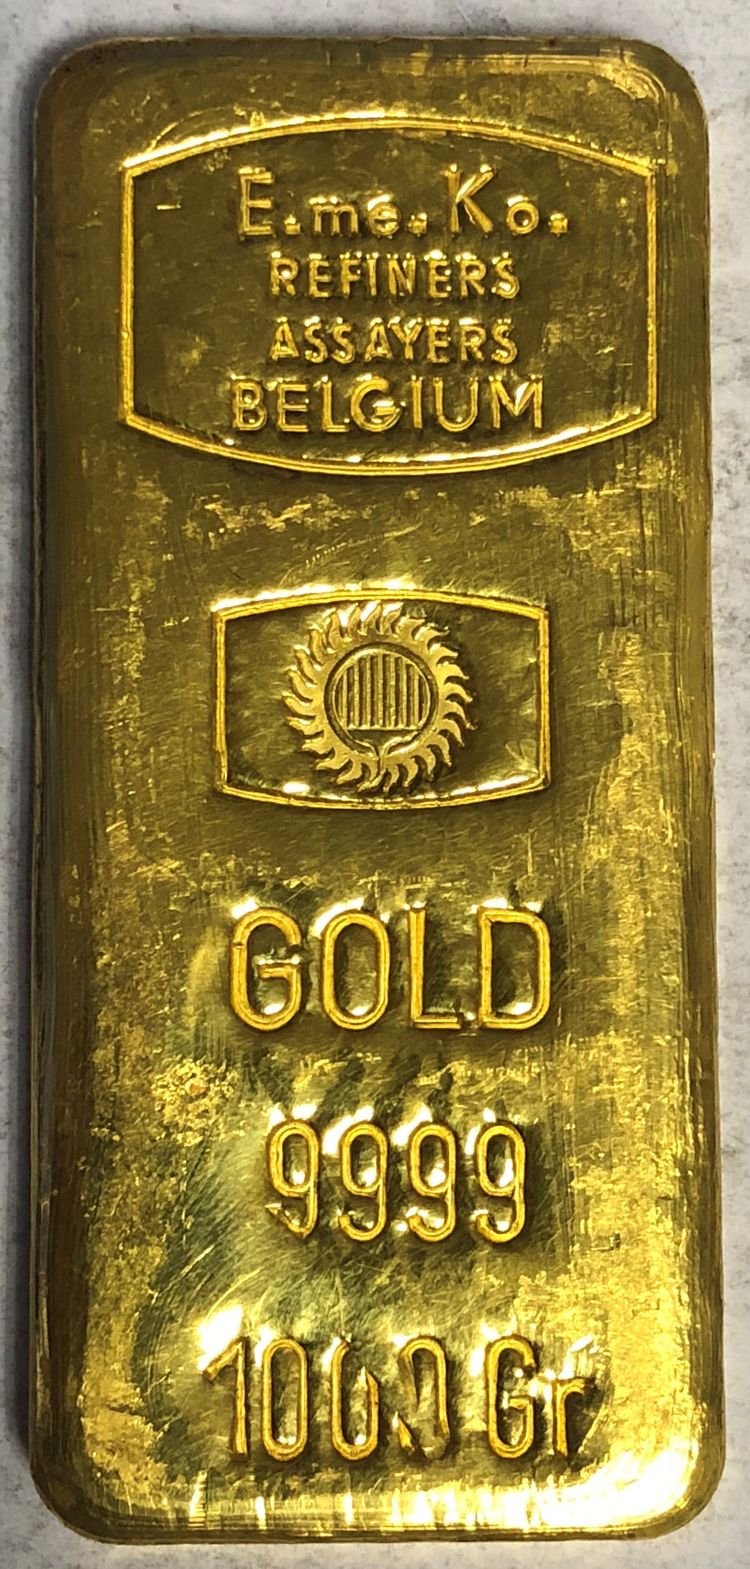 1000g Goldbarren EMEKO